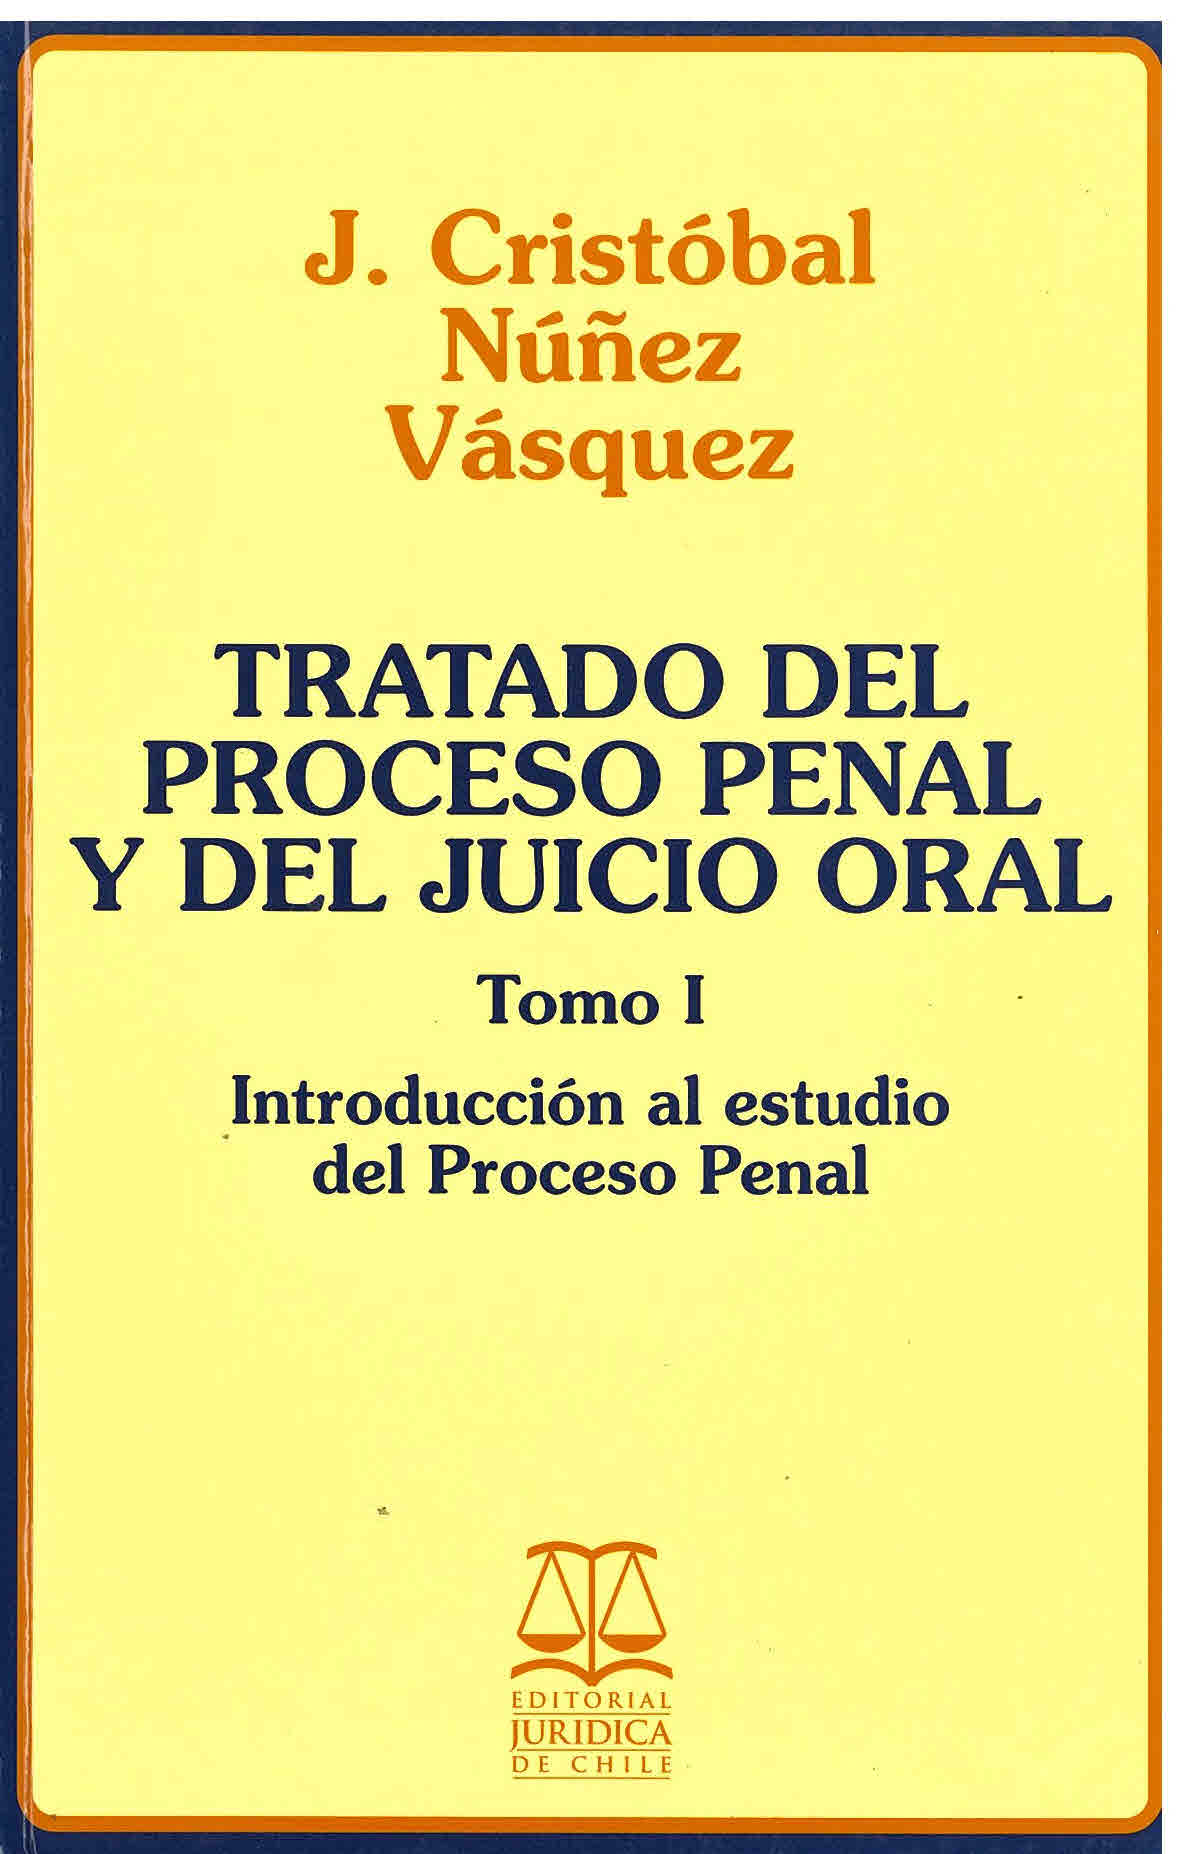 Tratado del proceso penal y del juicio oral. : introducción al estudio del proceso penal